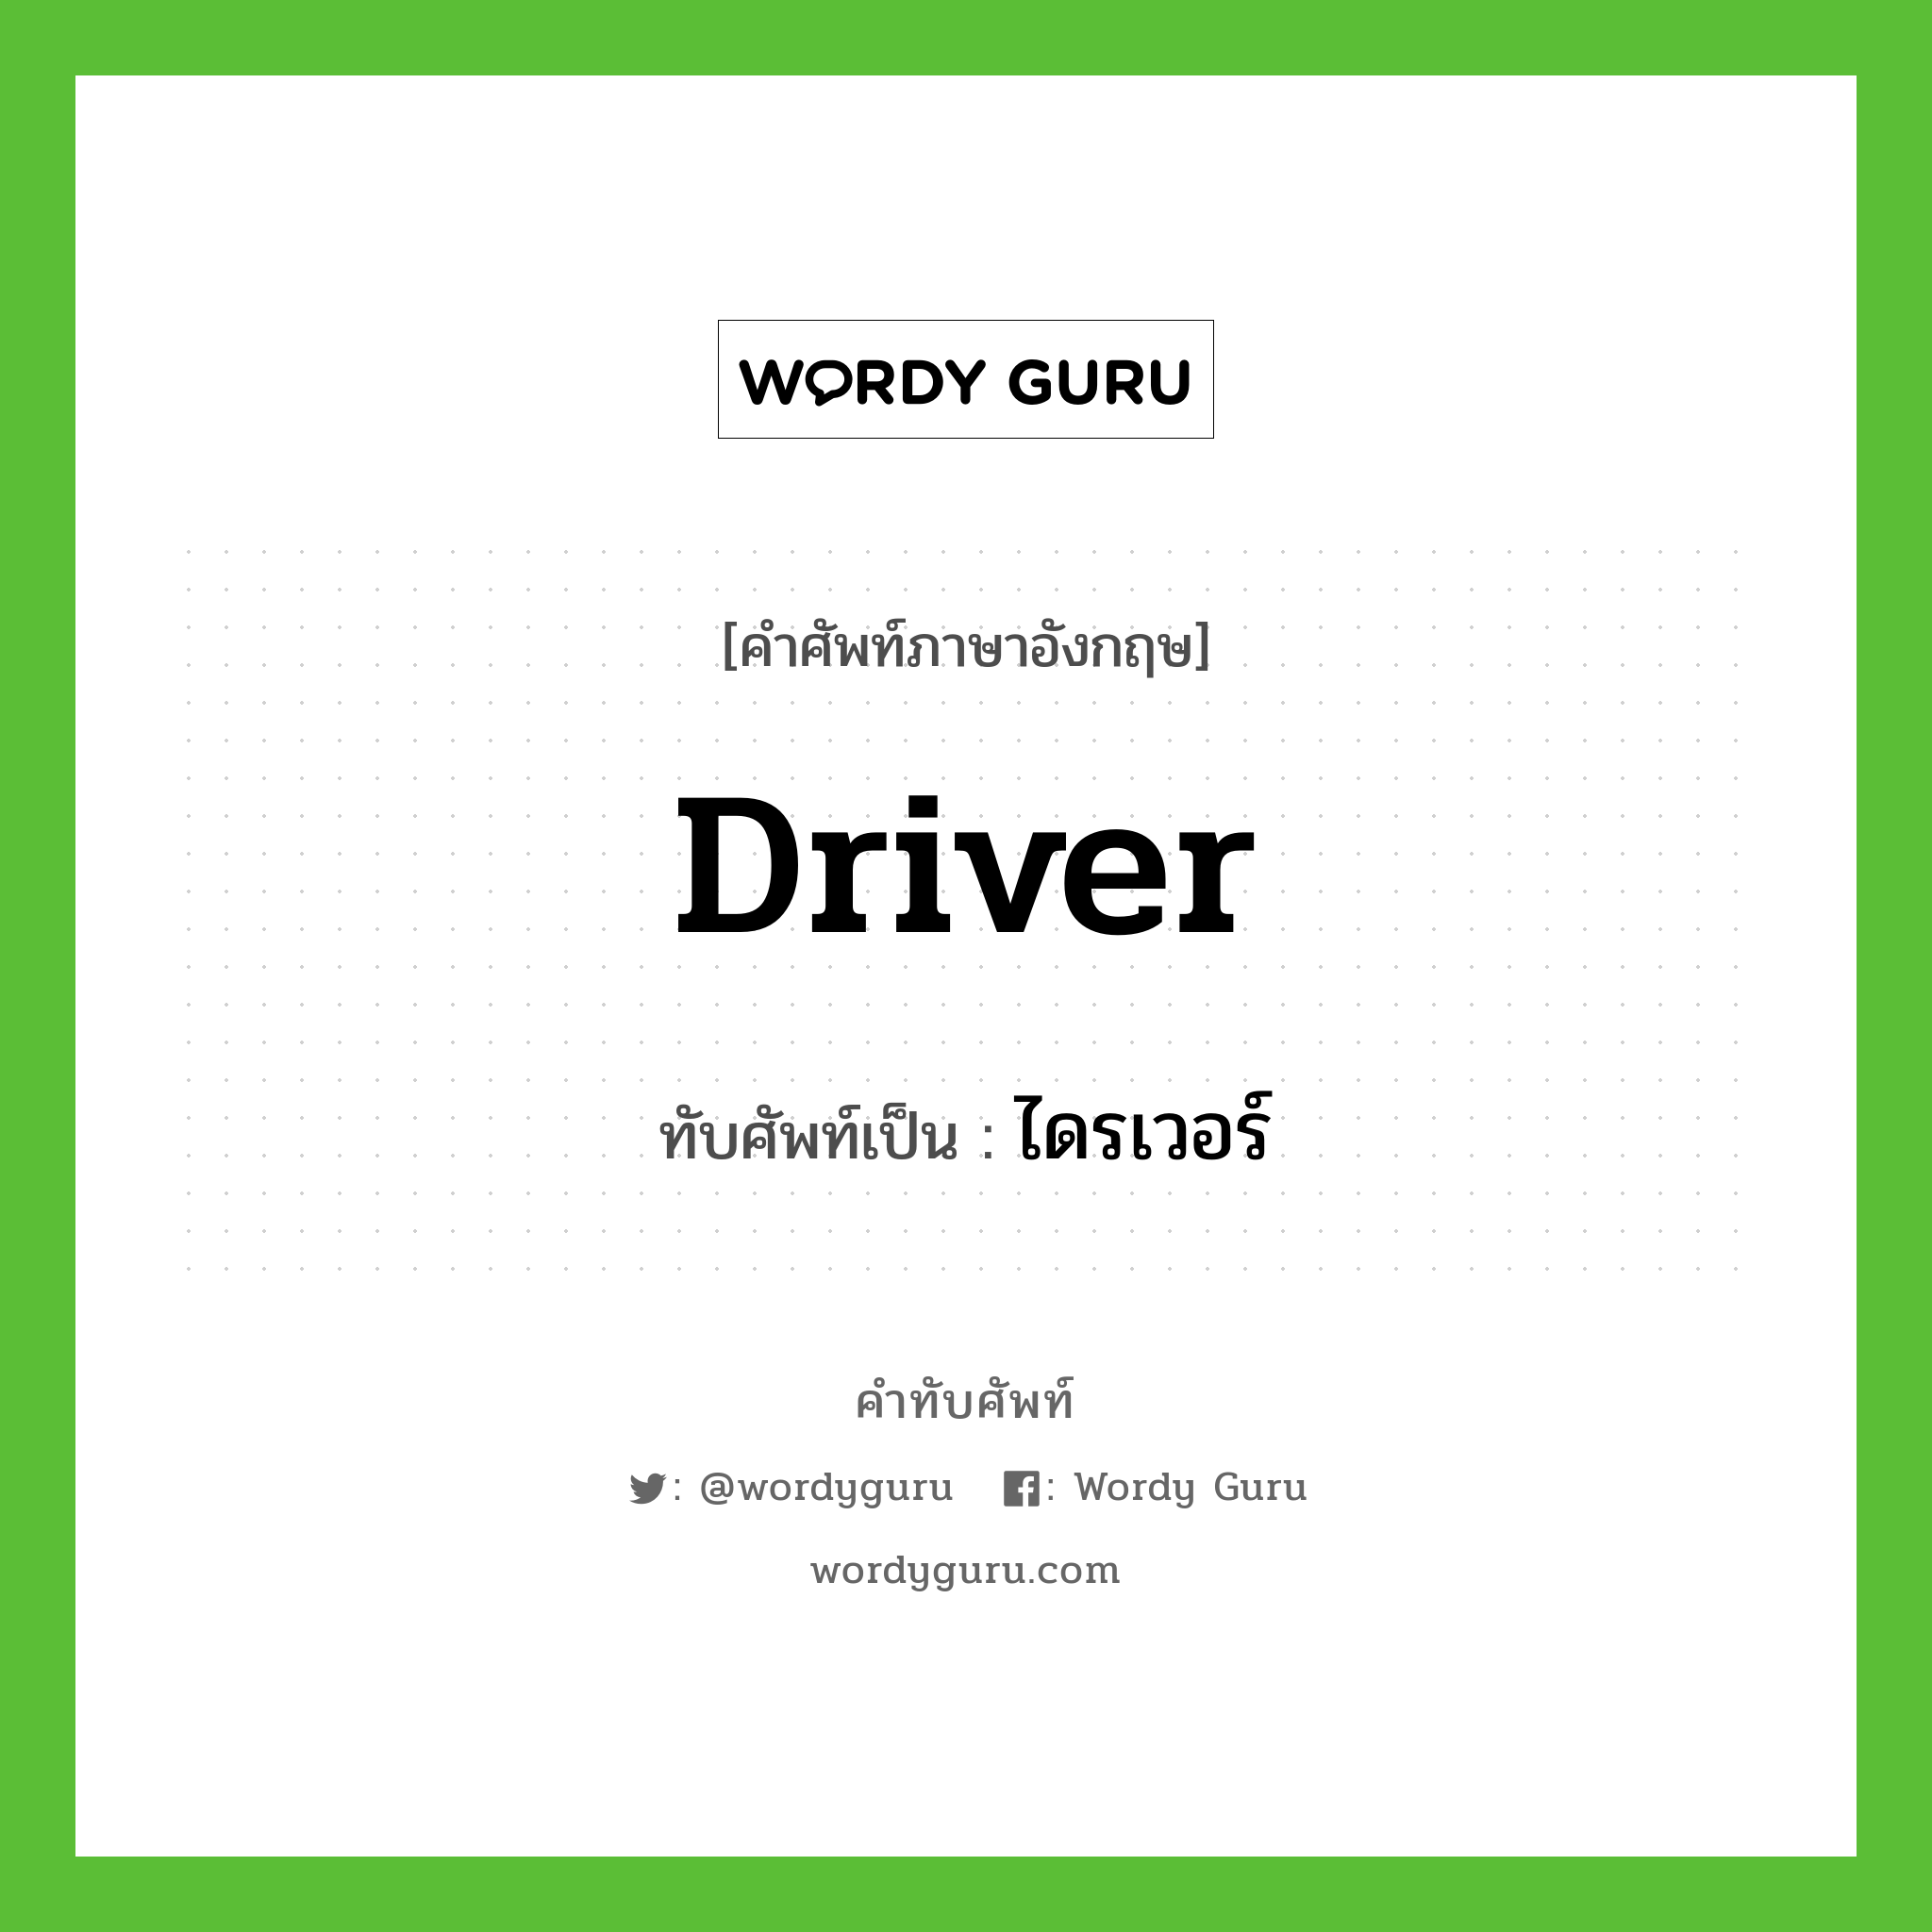 driver เขียนเป็นคำไทยว่าอะไร?, คำศัพท์ภาษาอังกฤษ driver ทับศัพท์เป็น ไดรเวอร์